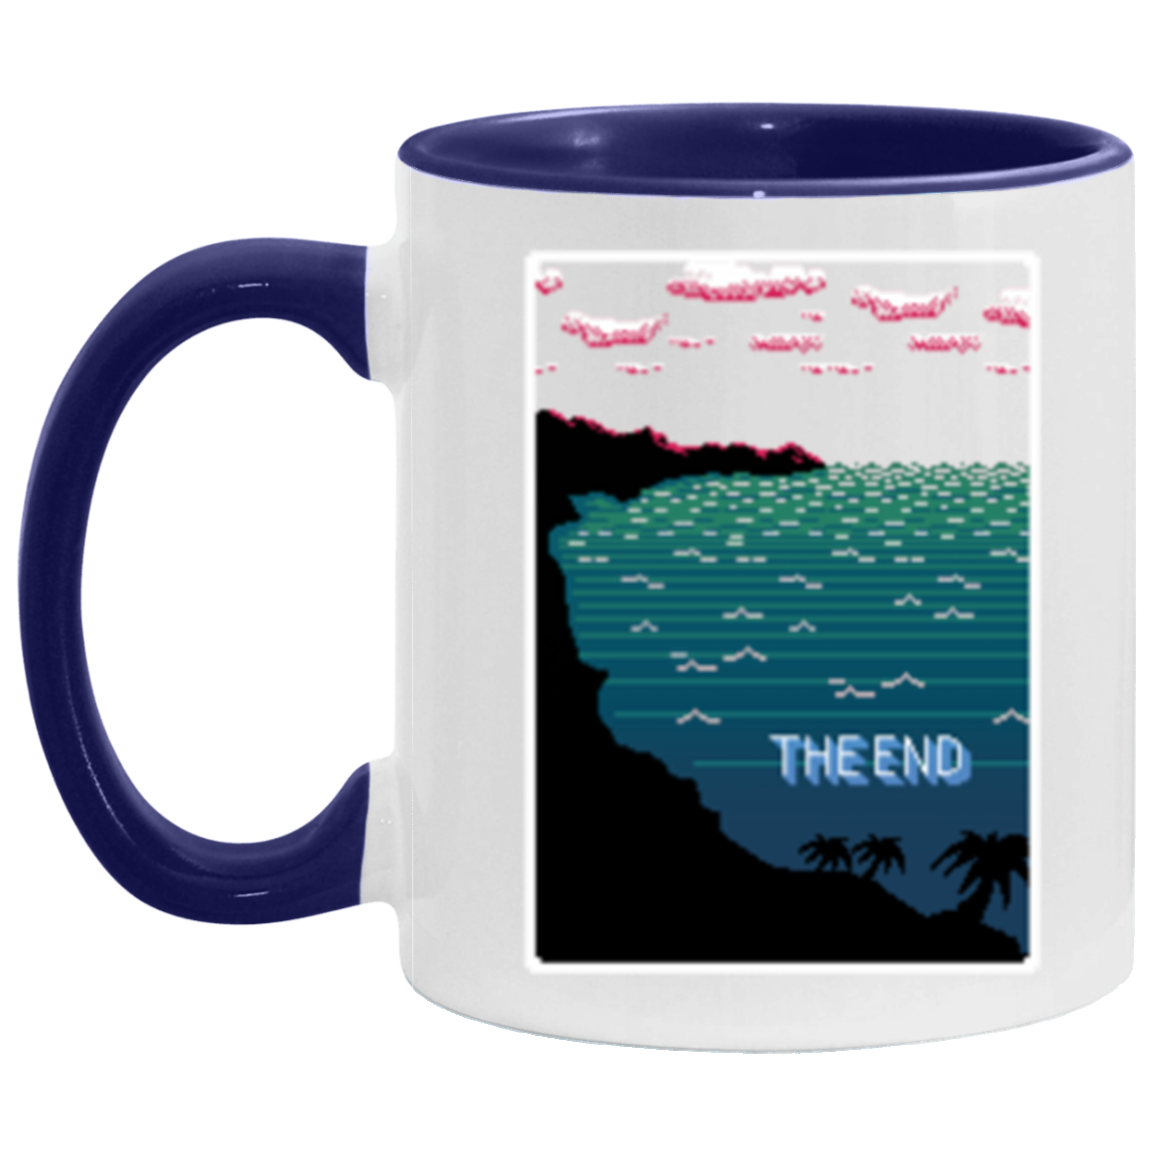 The End Mug